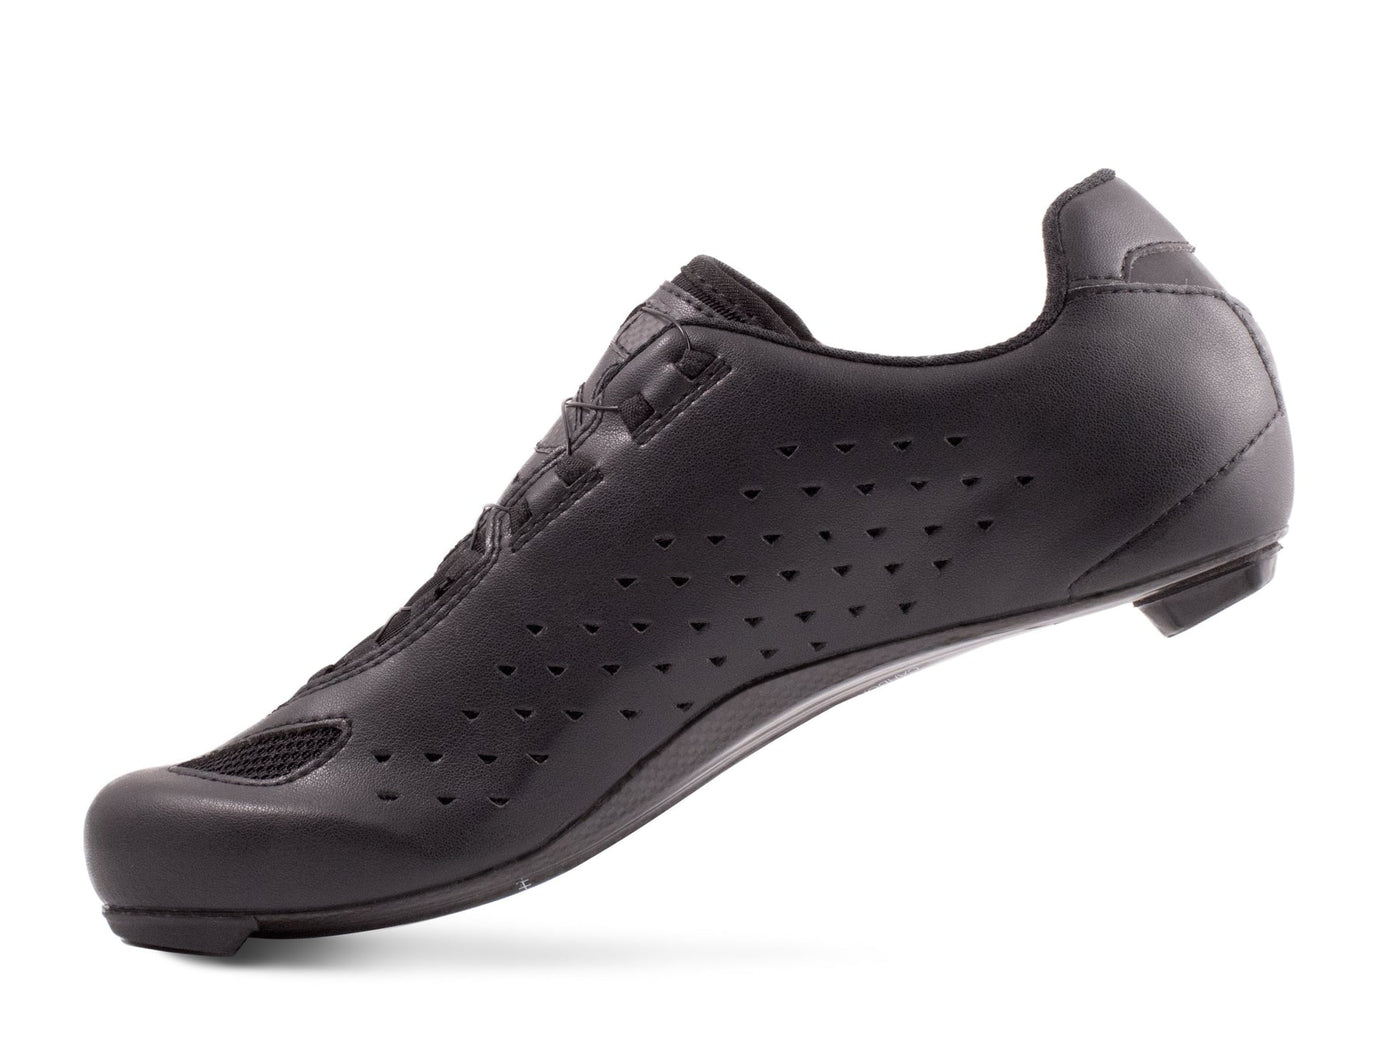 Lake CX219 Road Cycling Shoes (Black)